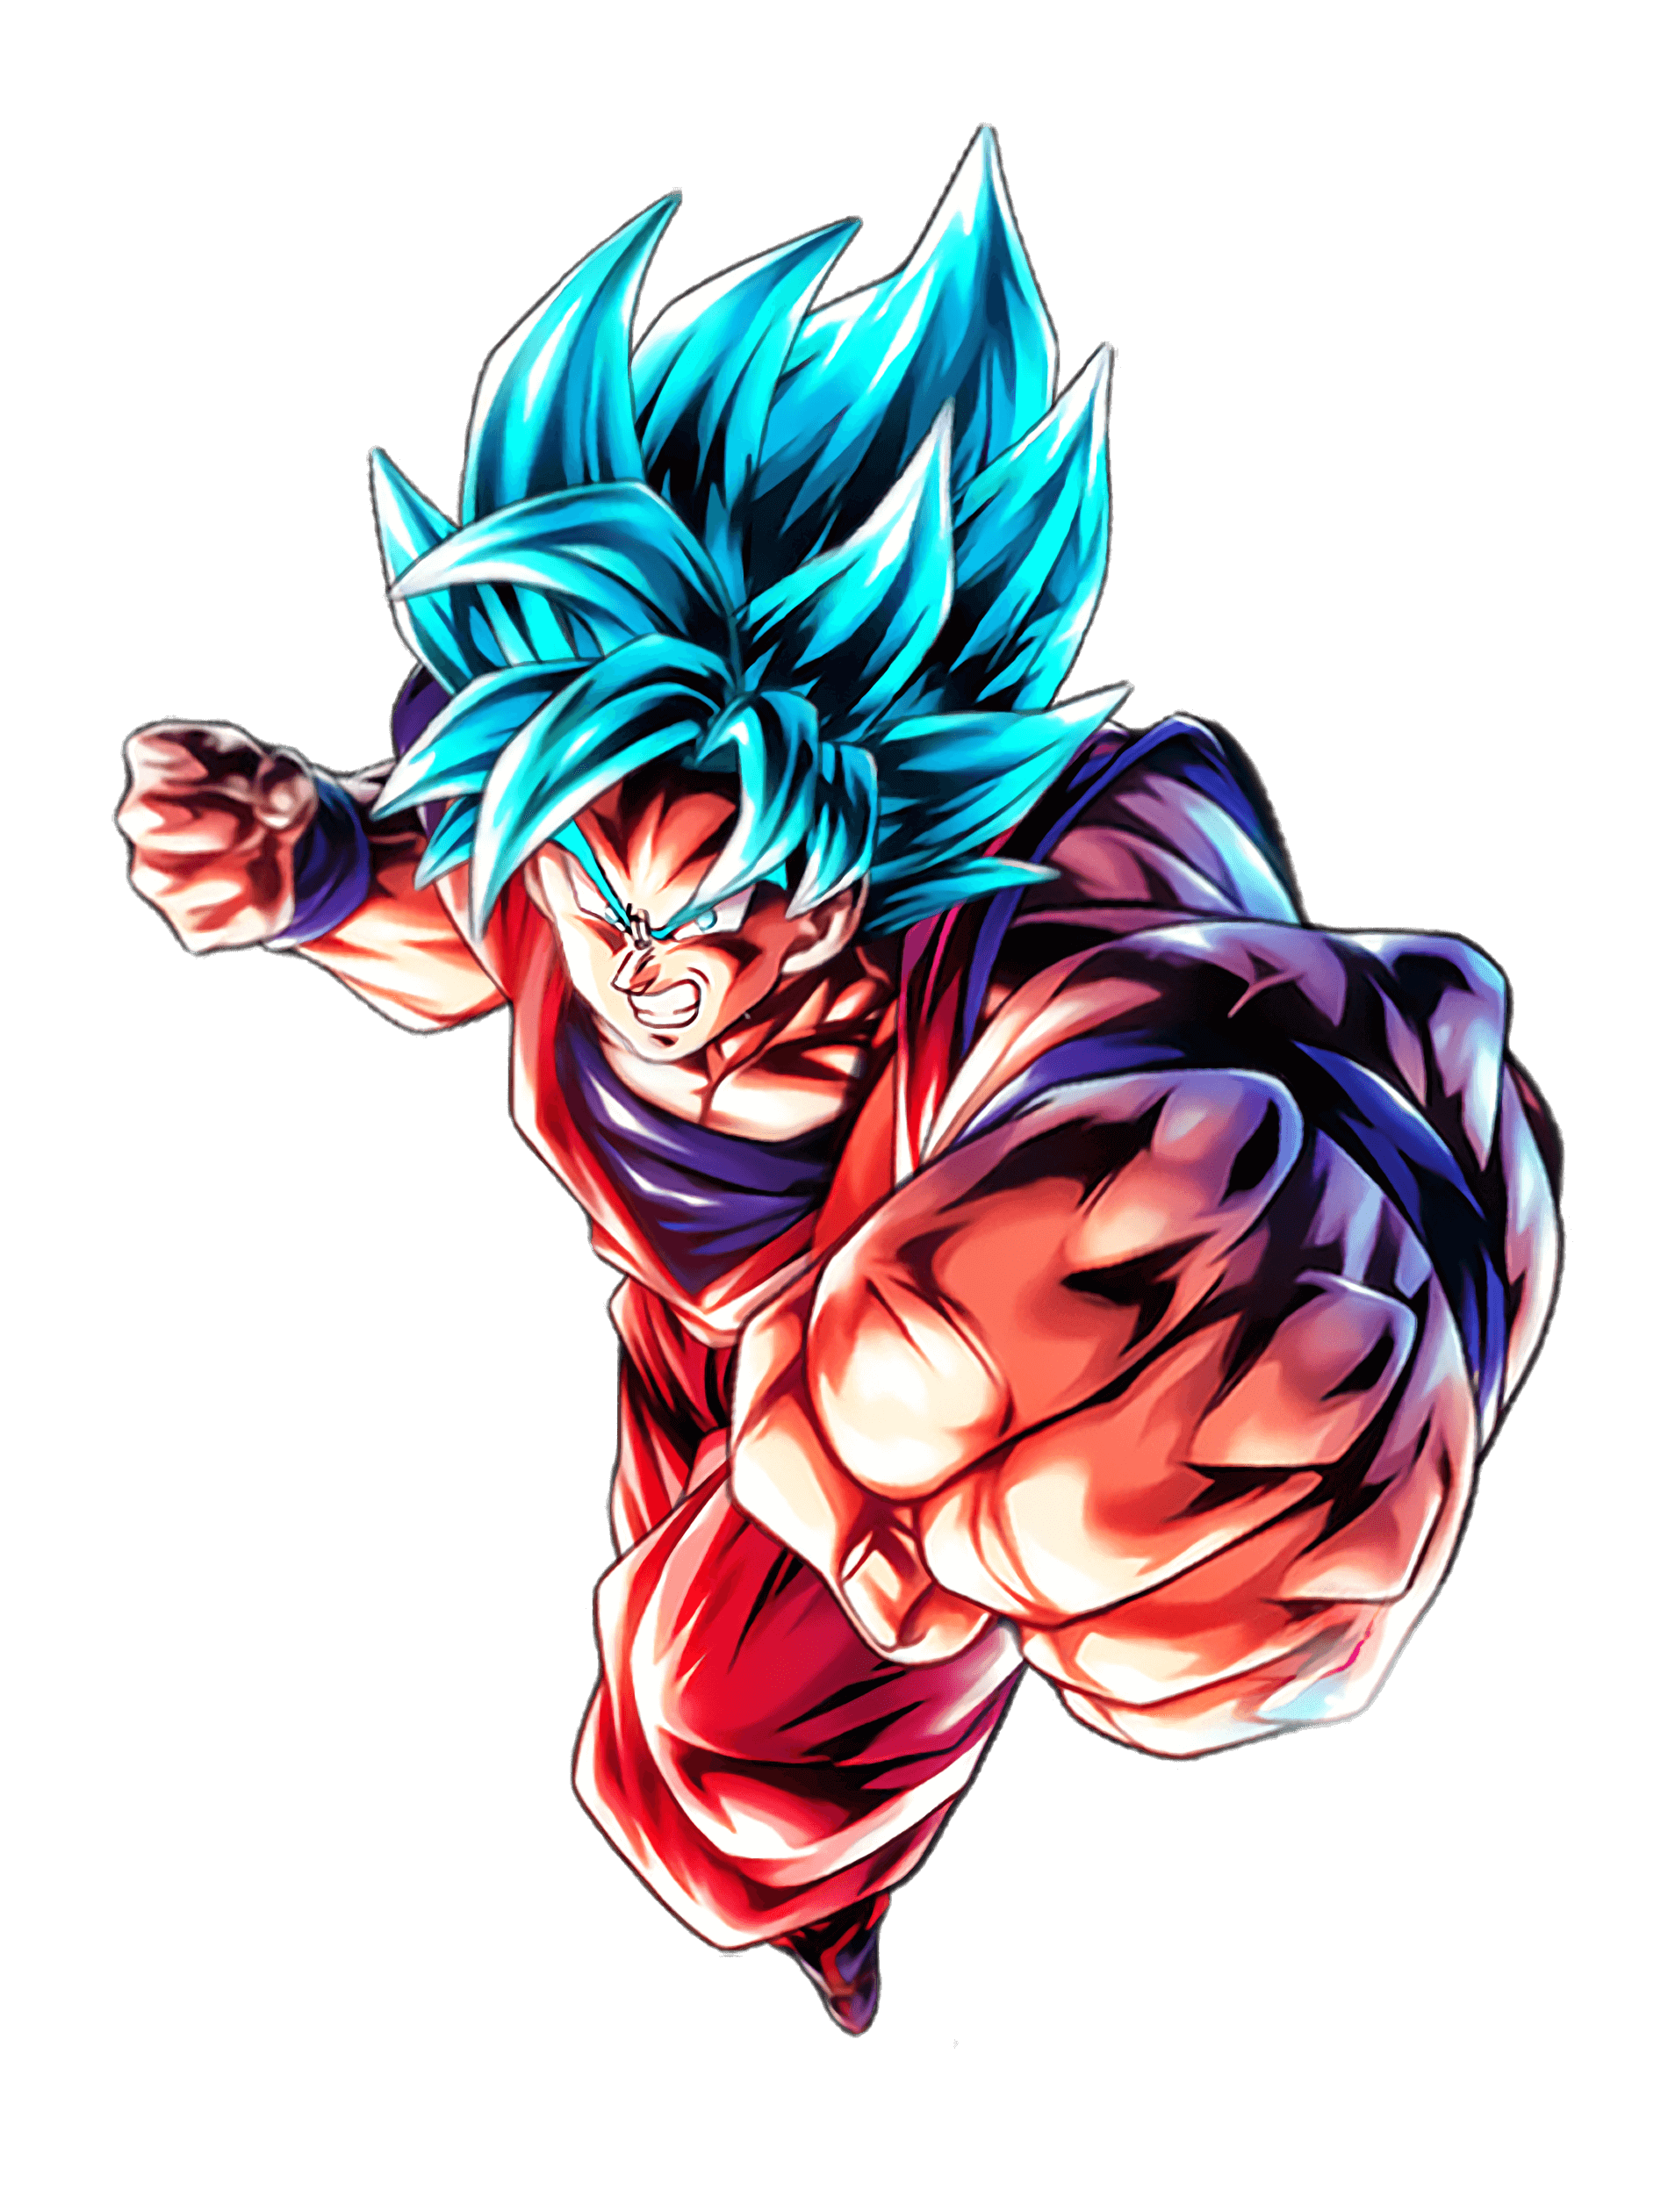 Goku super saiyan blue kaioken